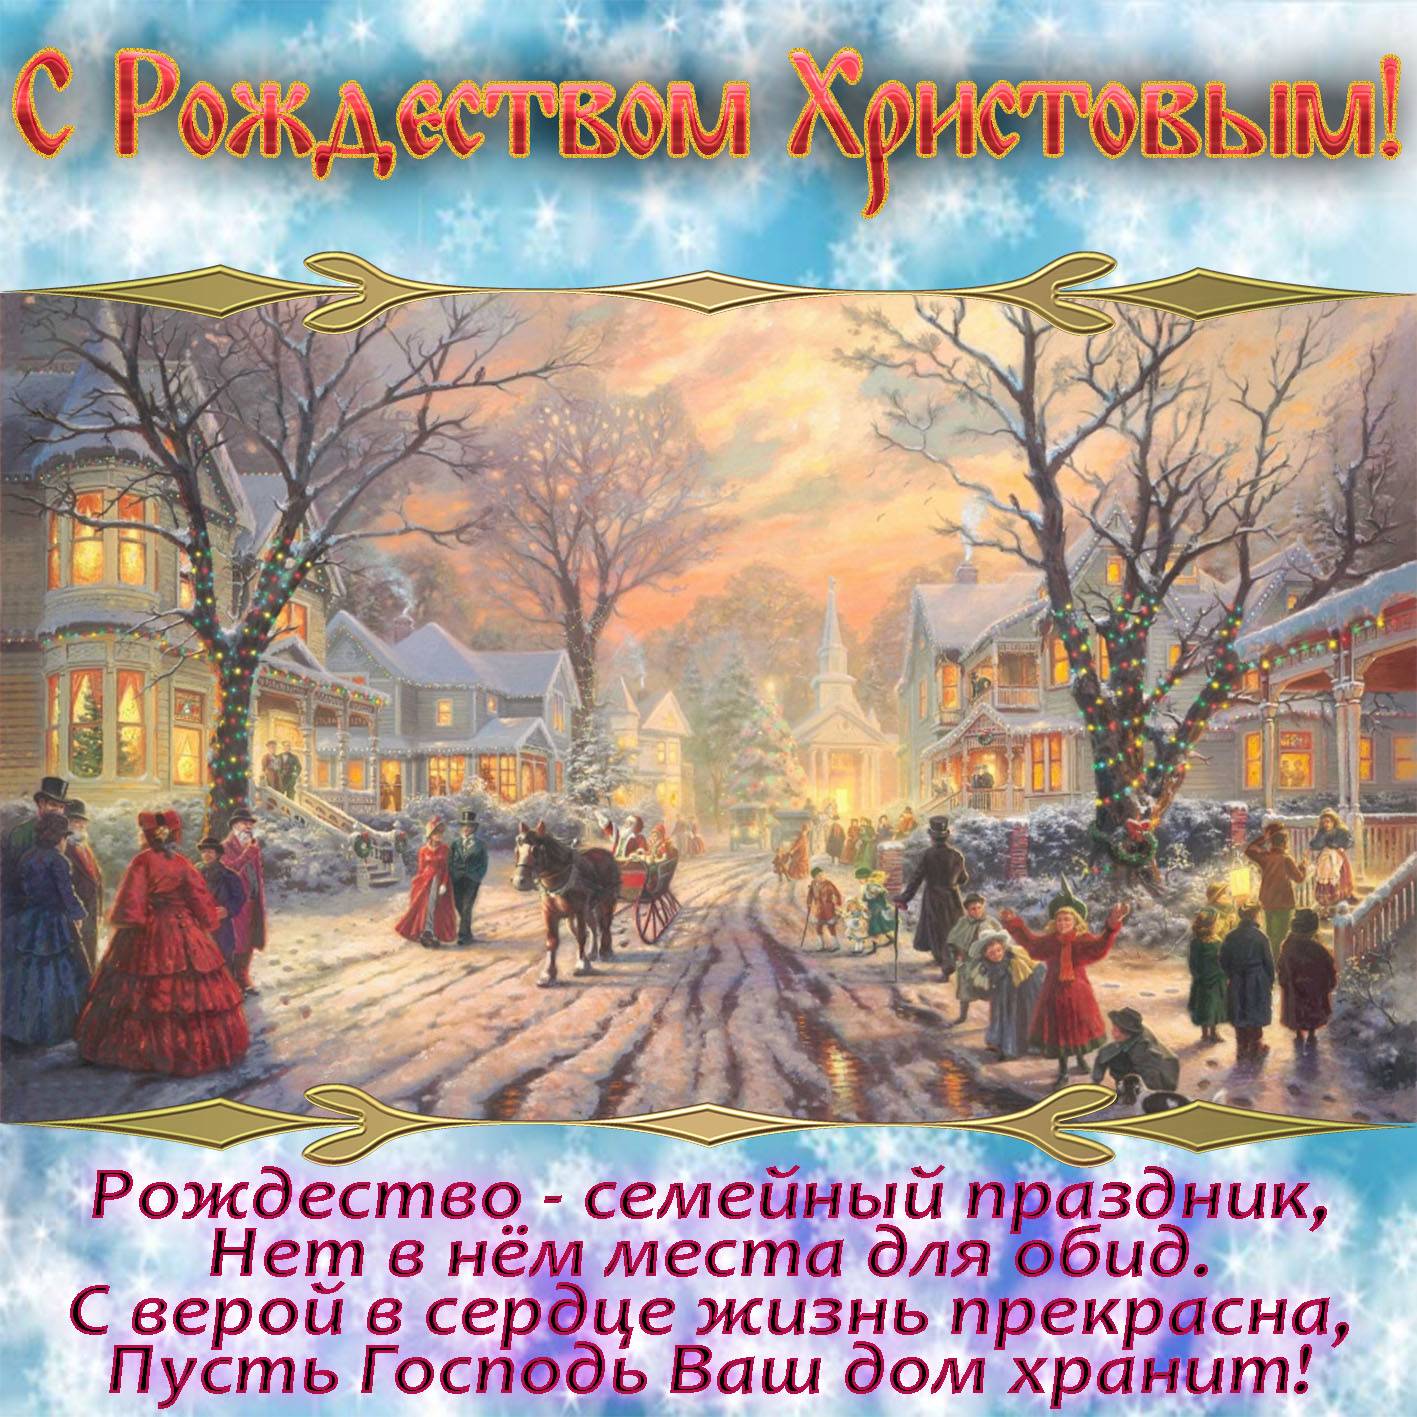 Теплые поздравления с рождеством христовым для православных